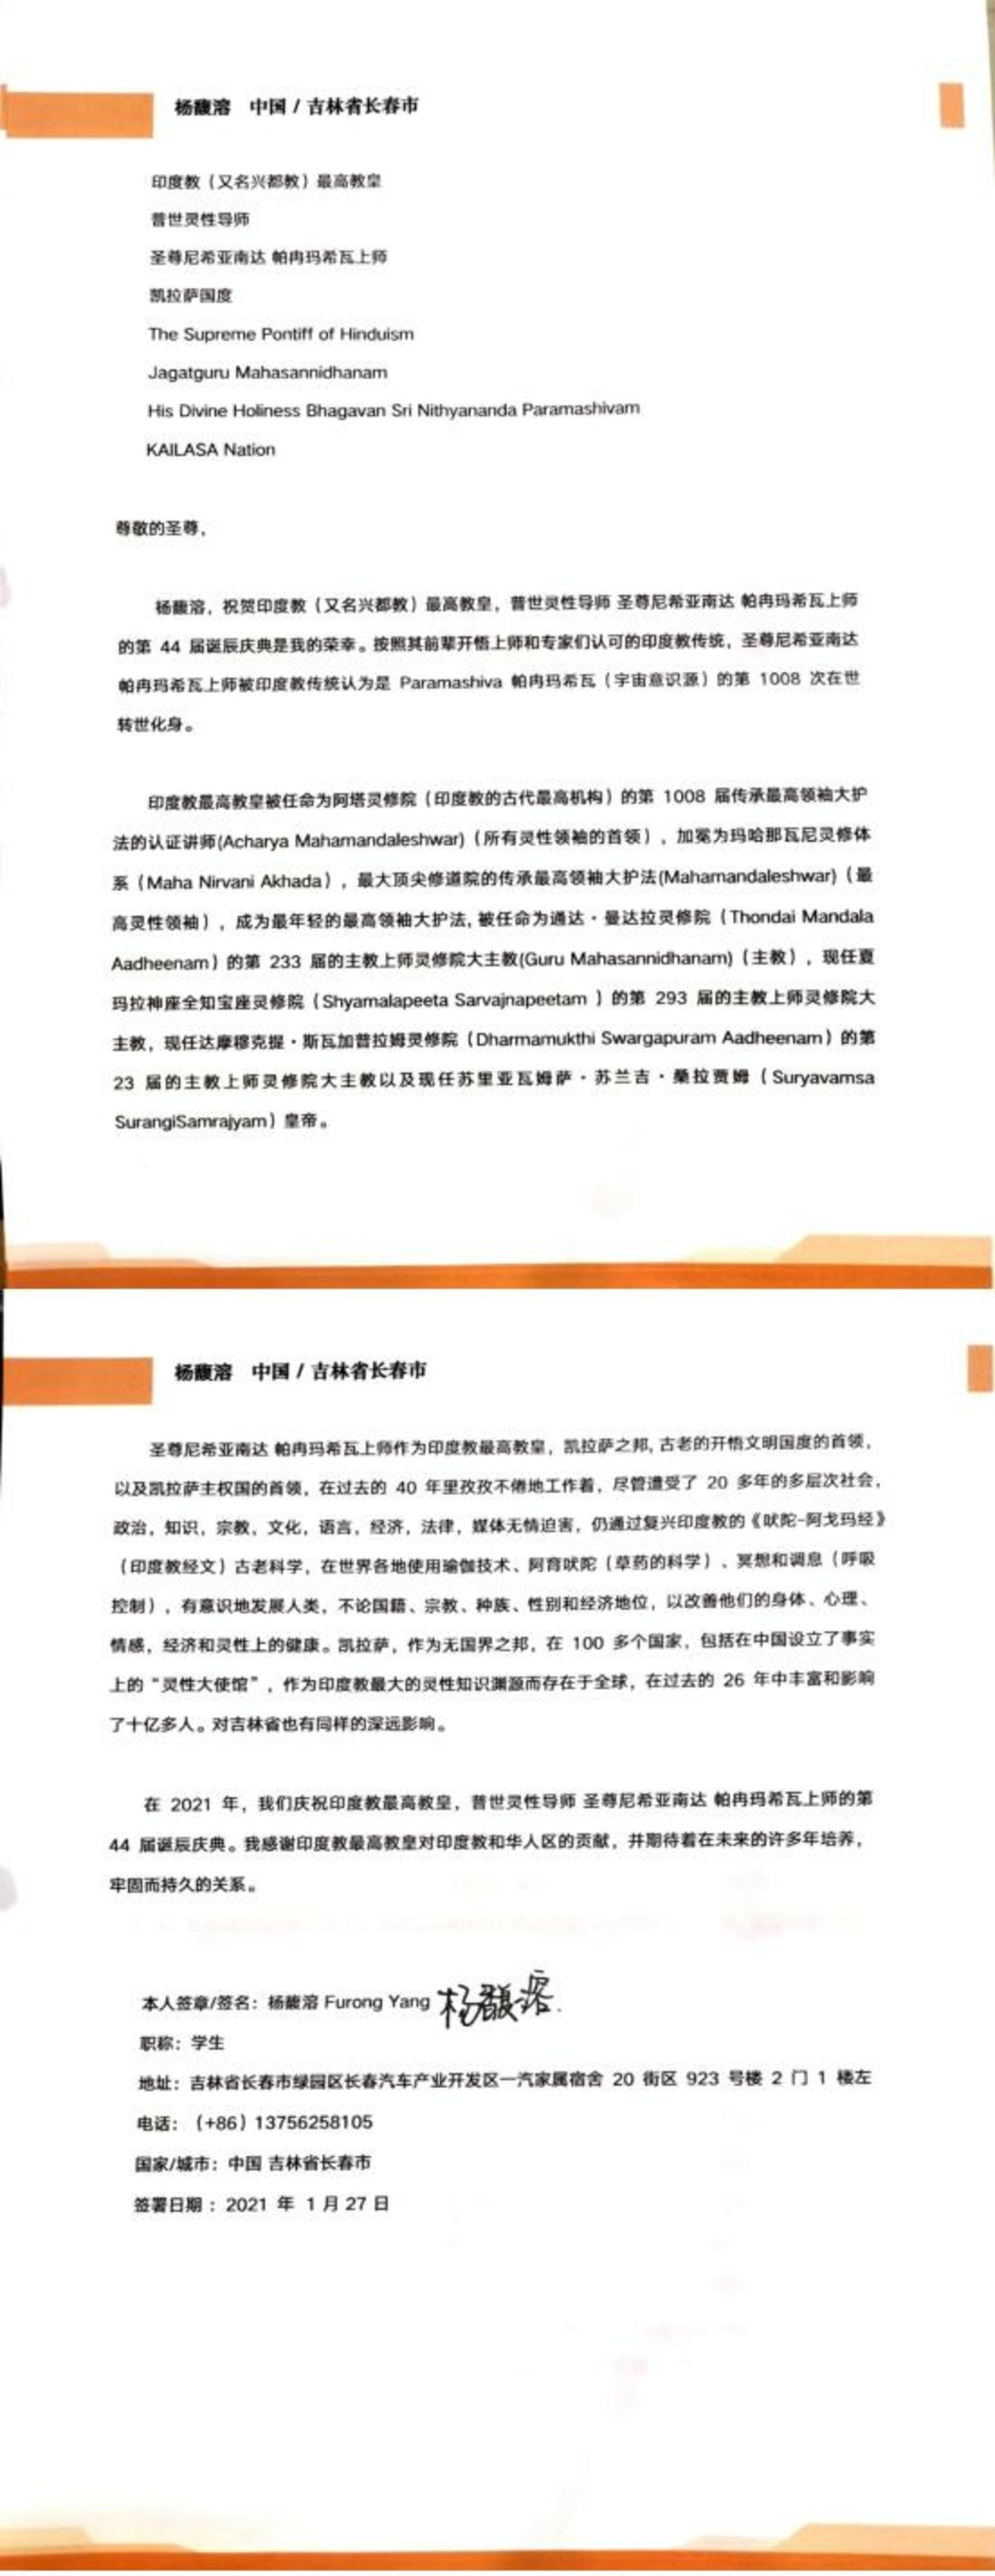 China---Furong-Yang---January27--2021-(Proclamation)-19WnIFXZKz6w1opht4C1FzYkIi1tC8IbX.pdf